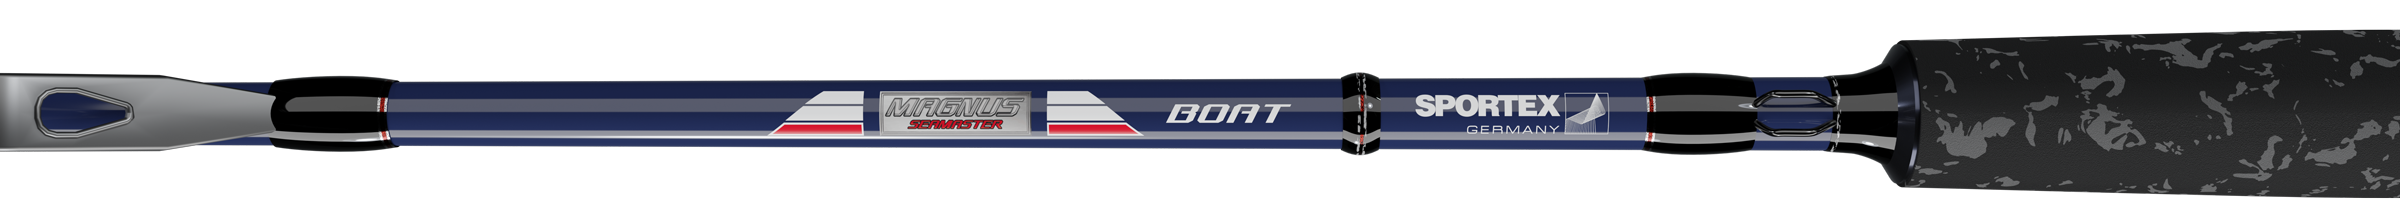 sportx-magnus-boat-blank